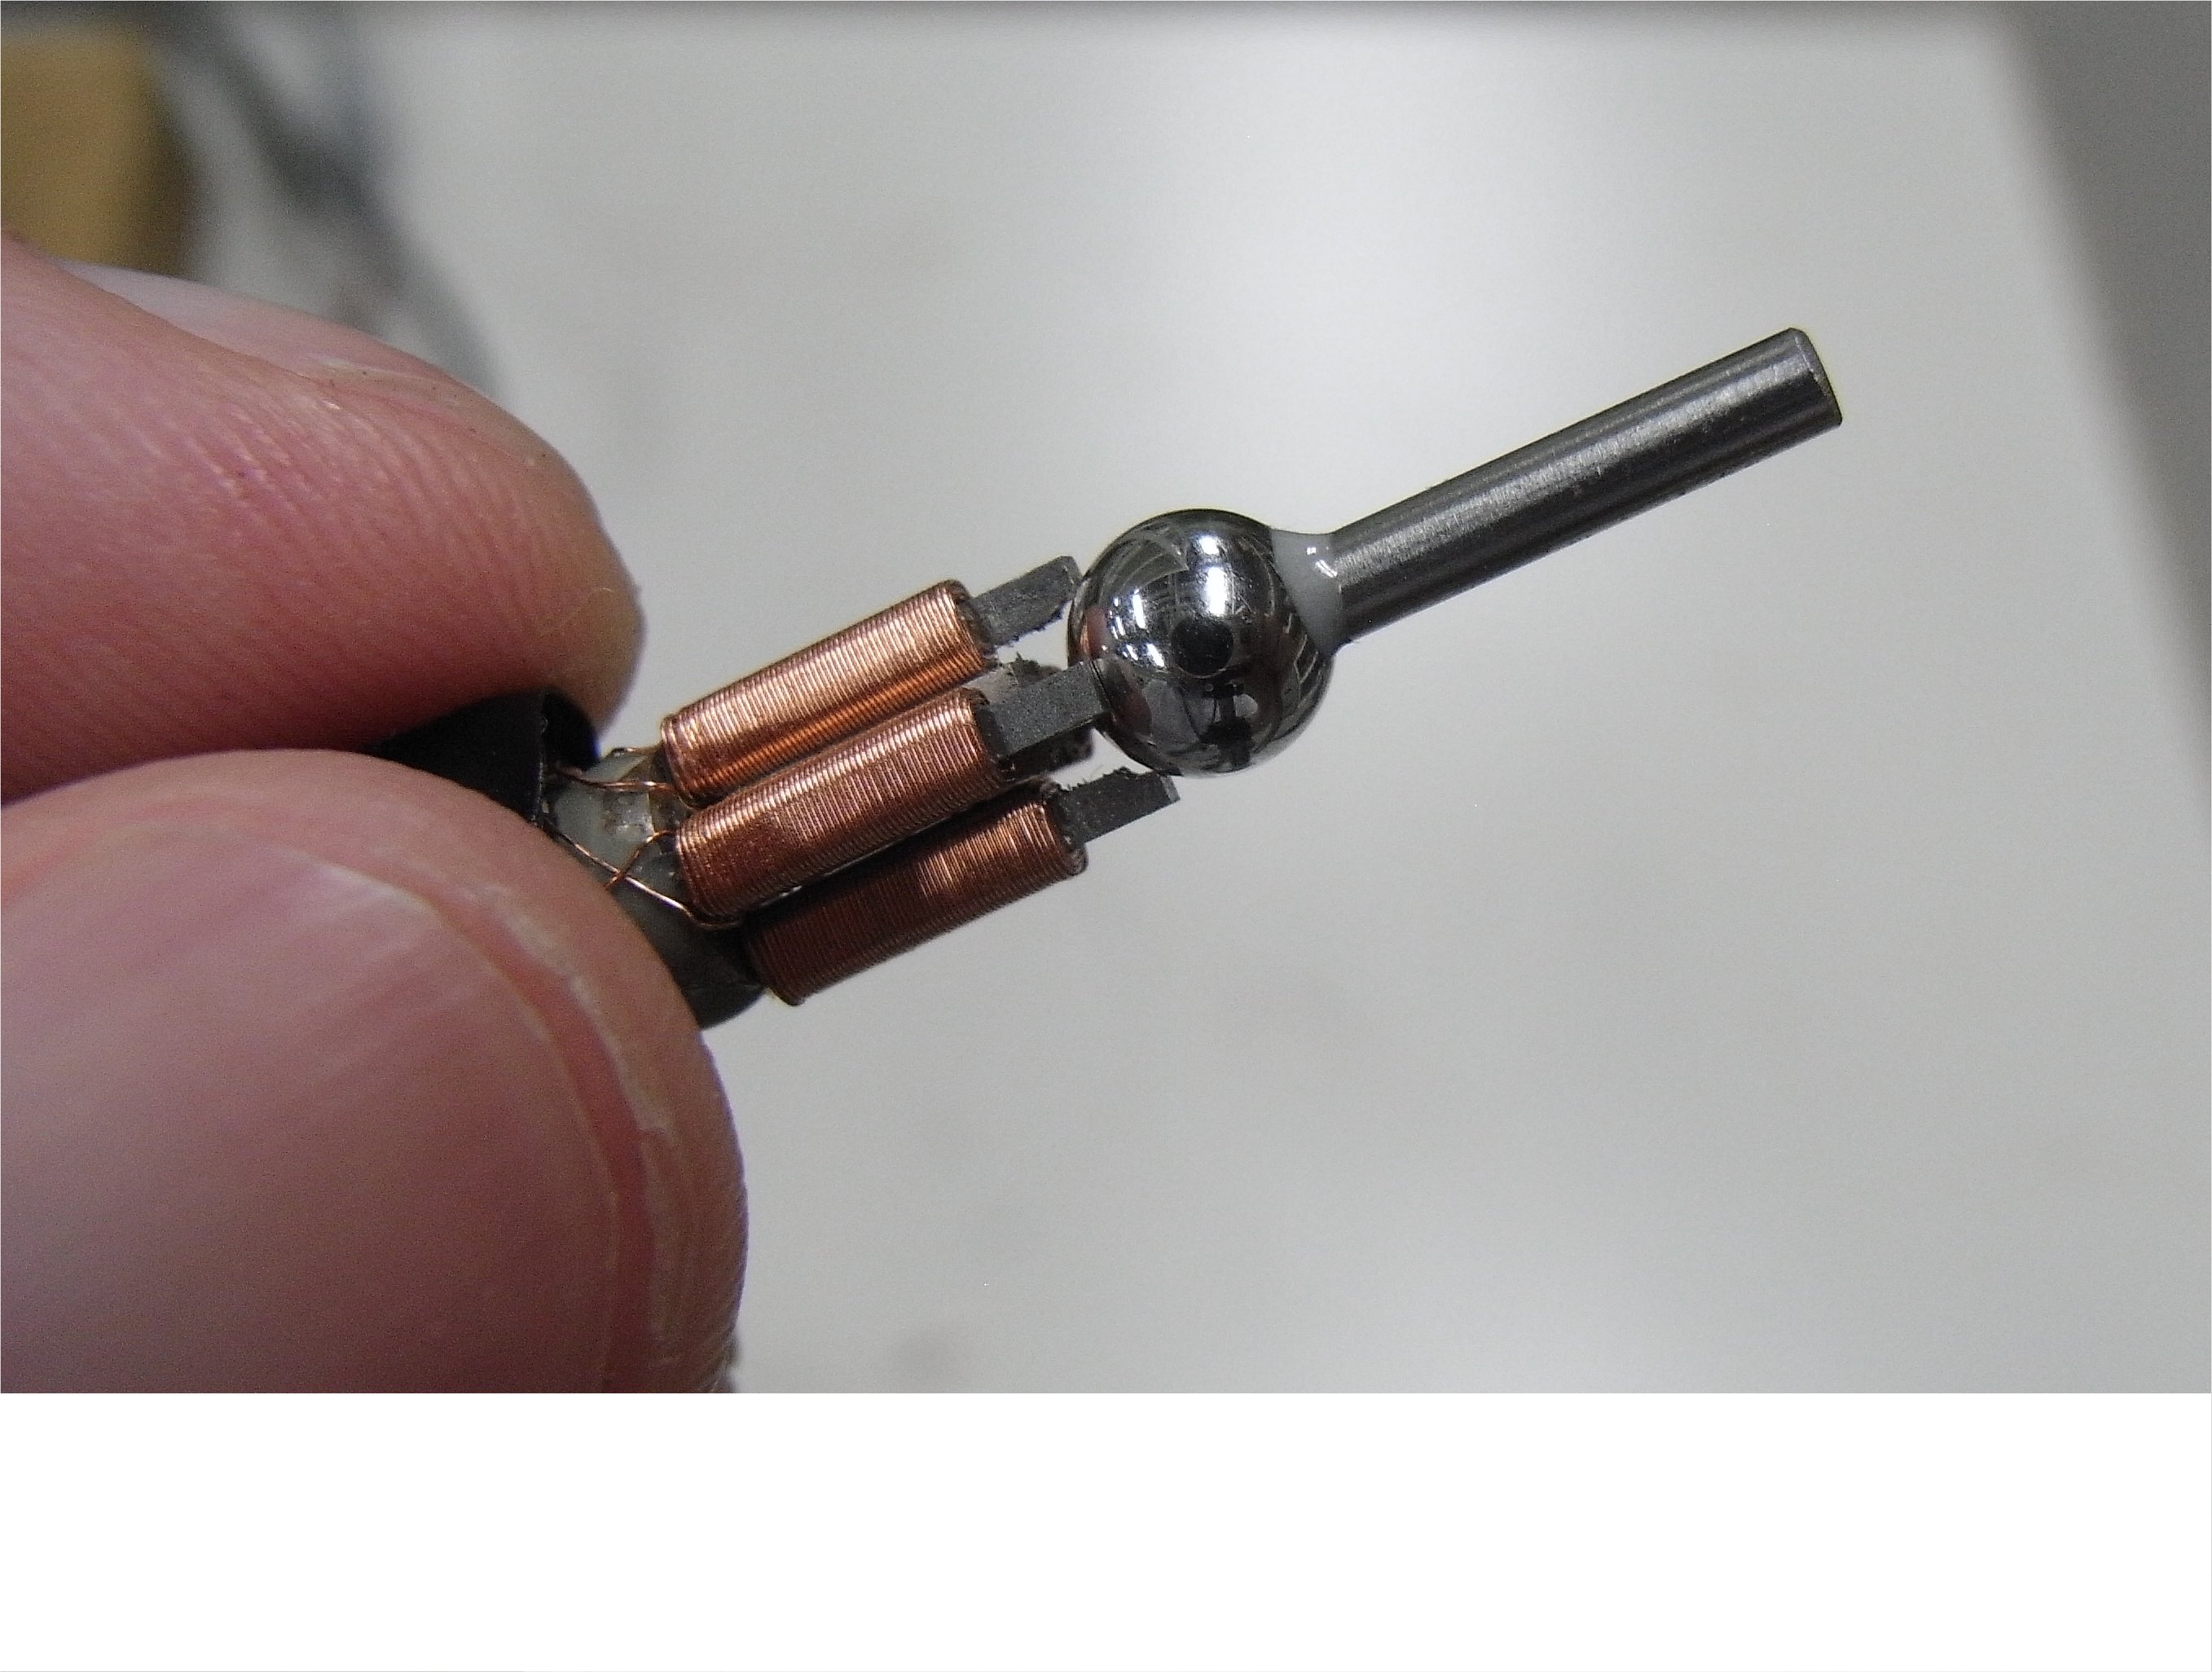 Micro Magnetostrictive Actuator using Iron-Gallium Alloy